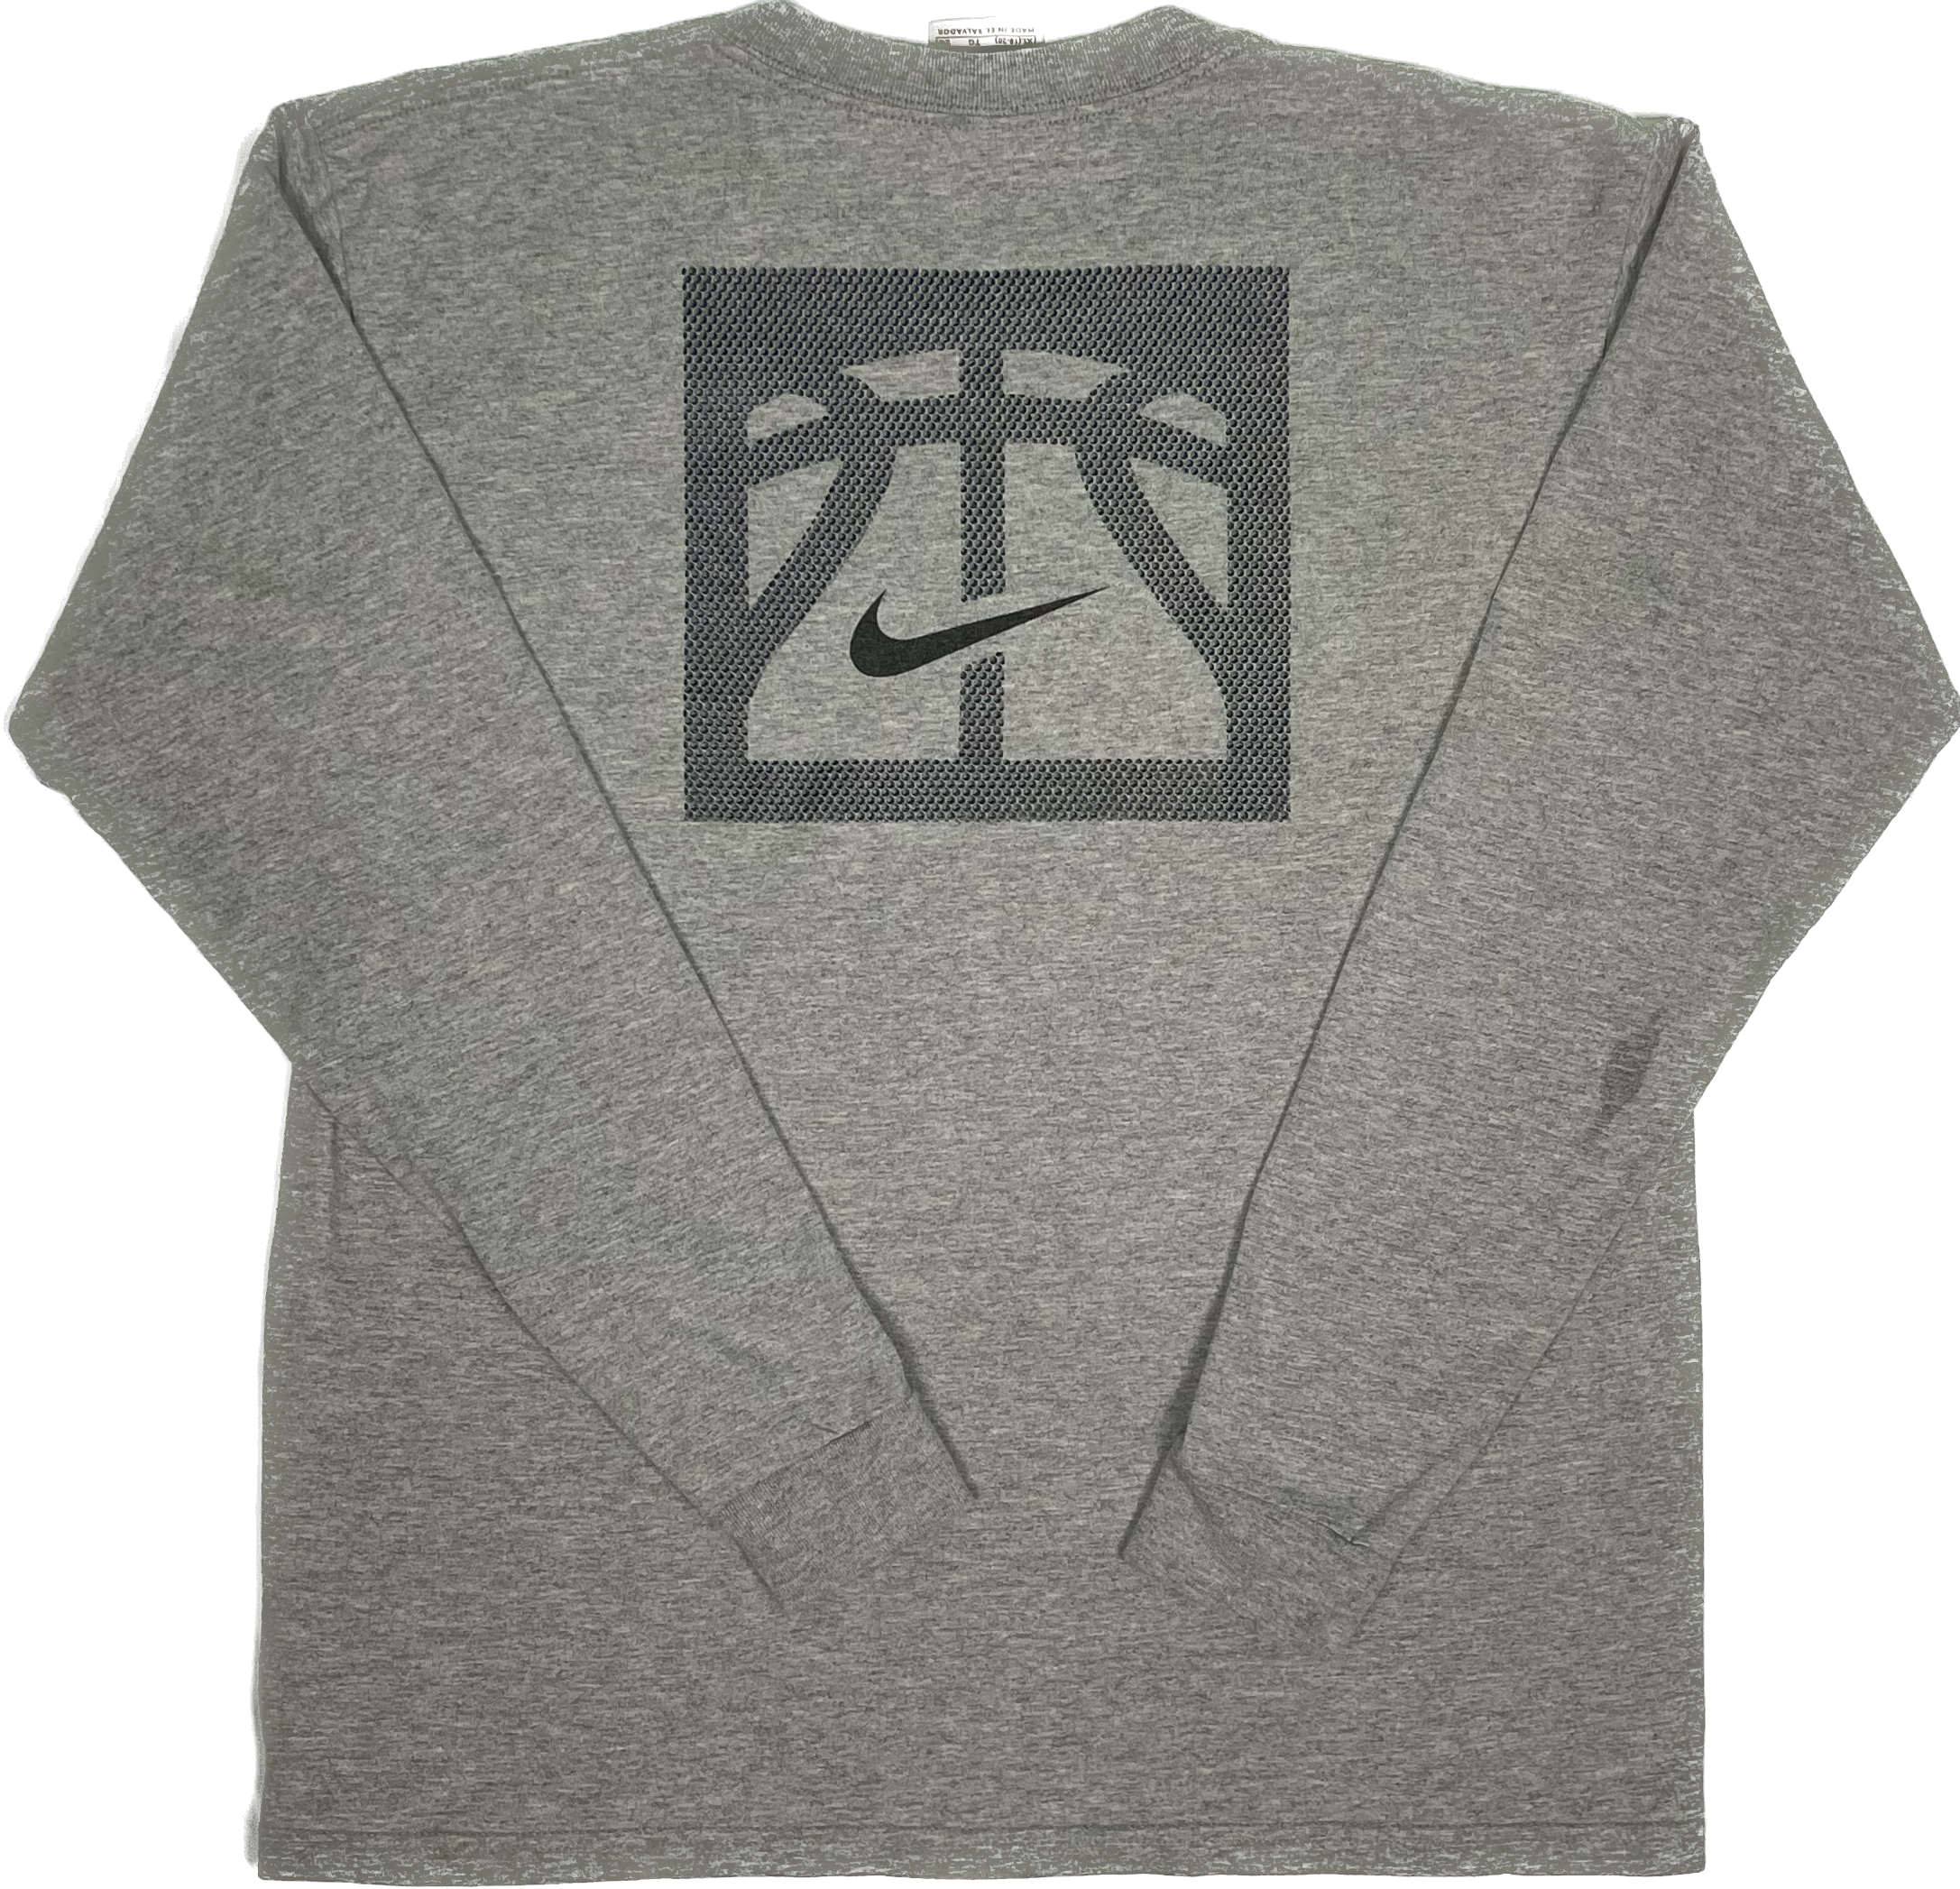 Nike Basketball Play on Player Vintage Long Sleeve Shirt